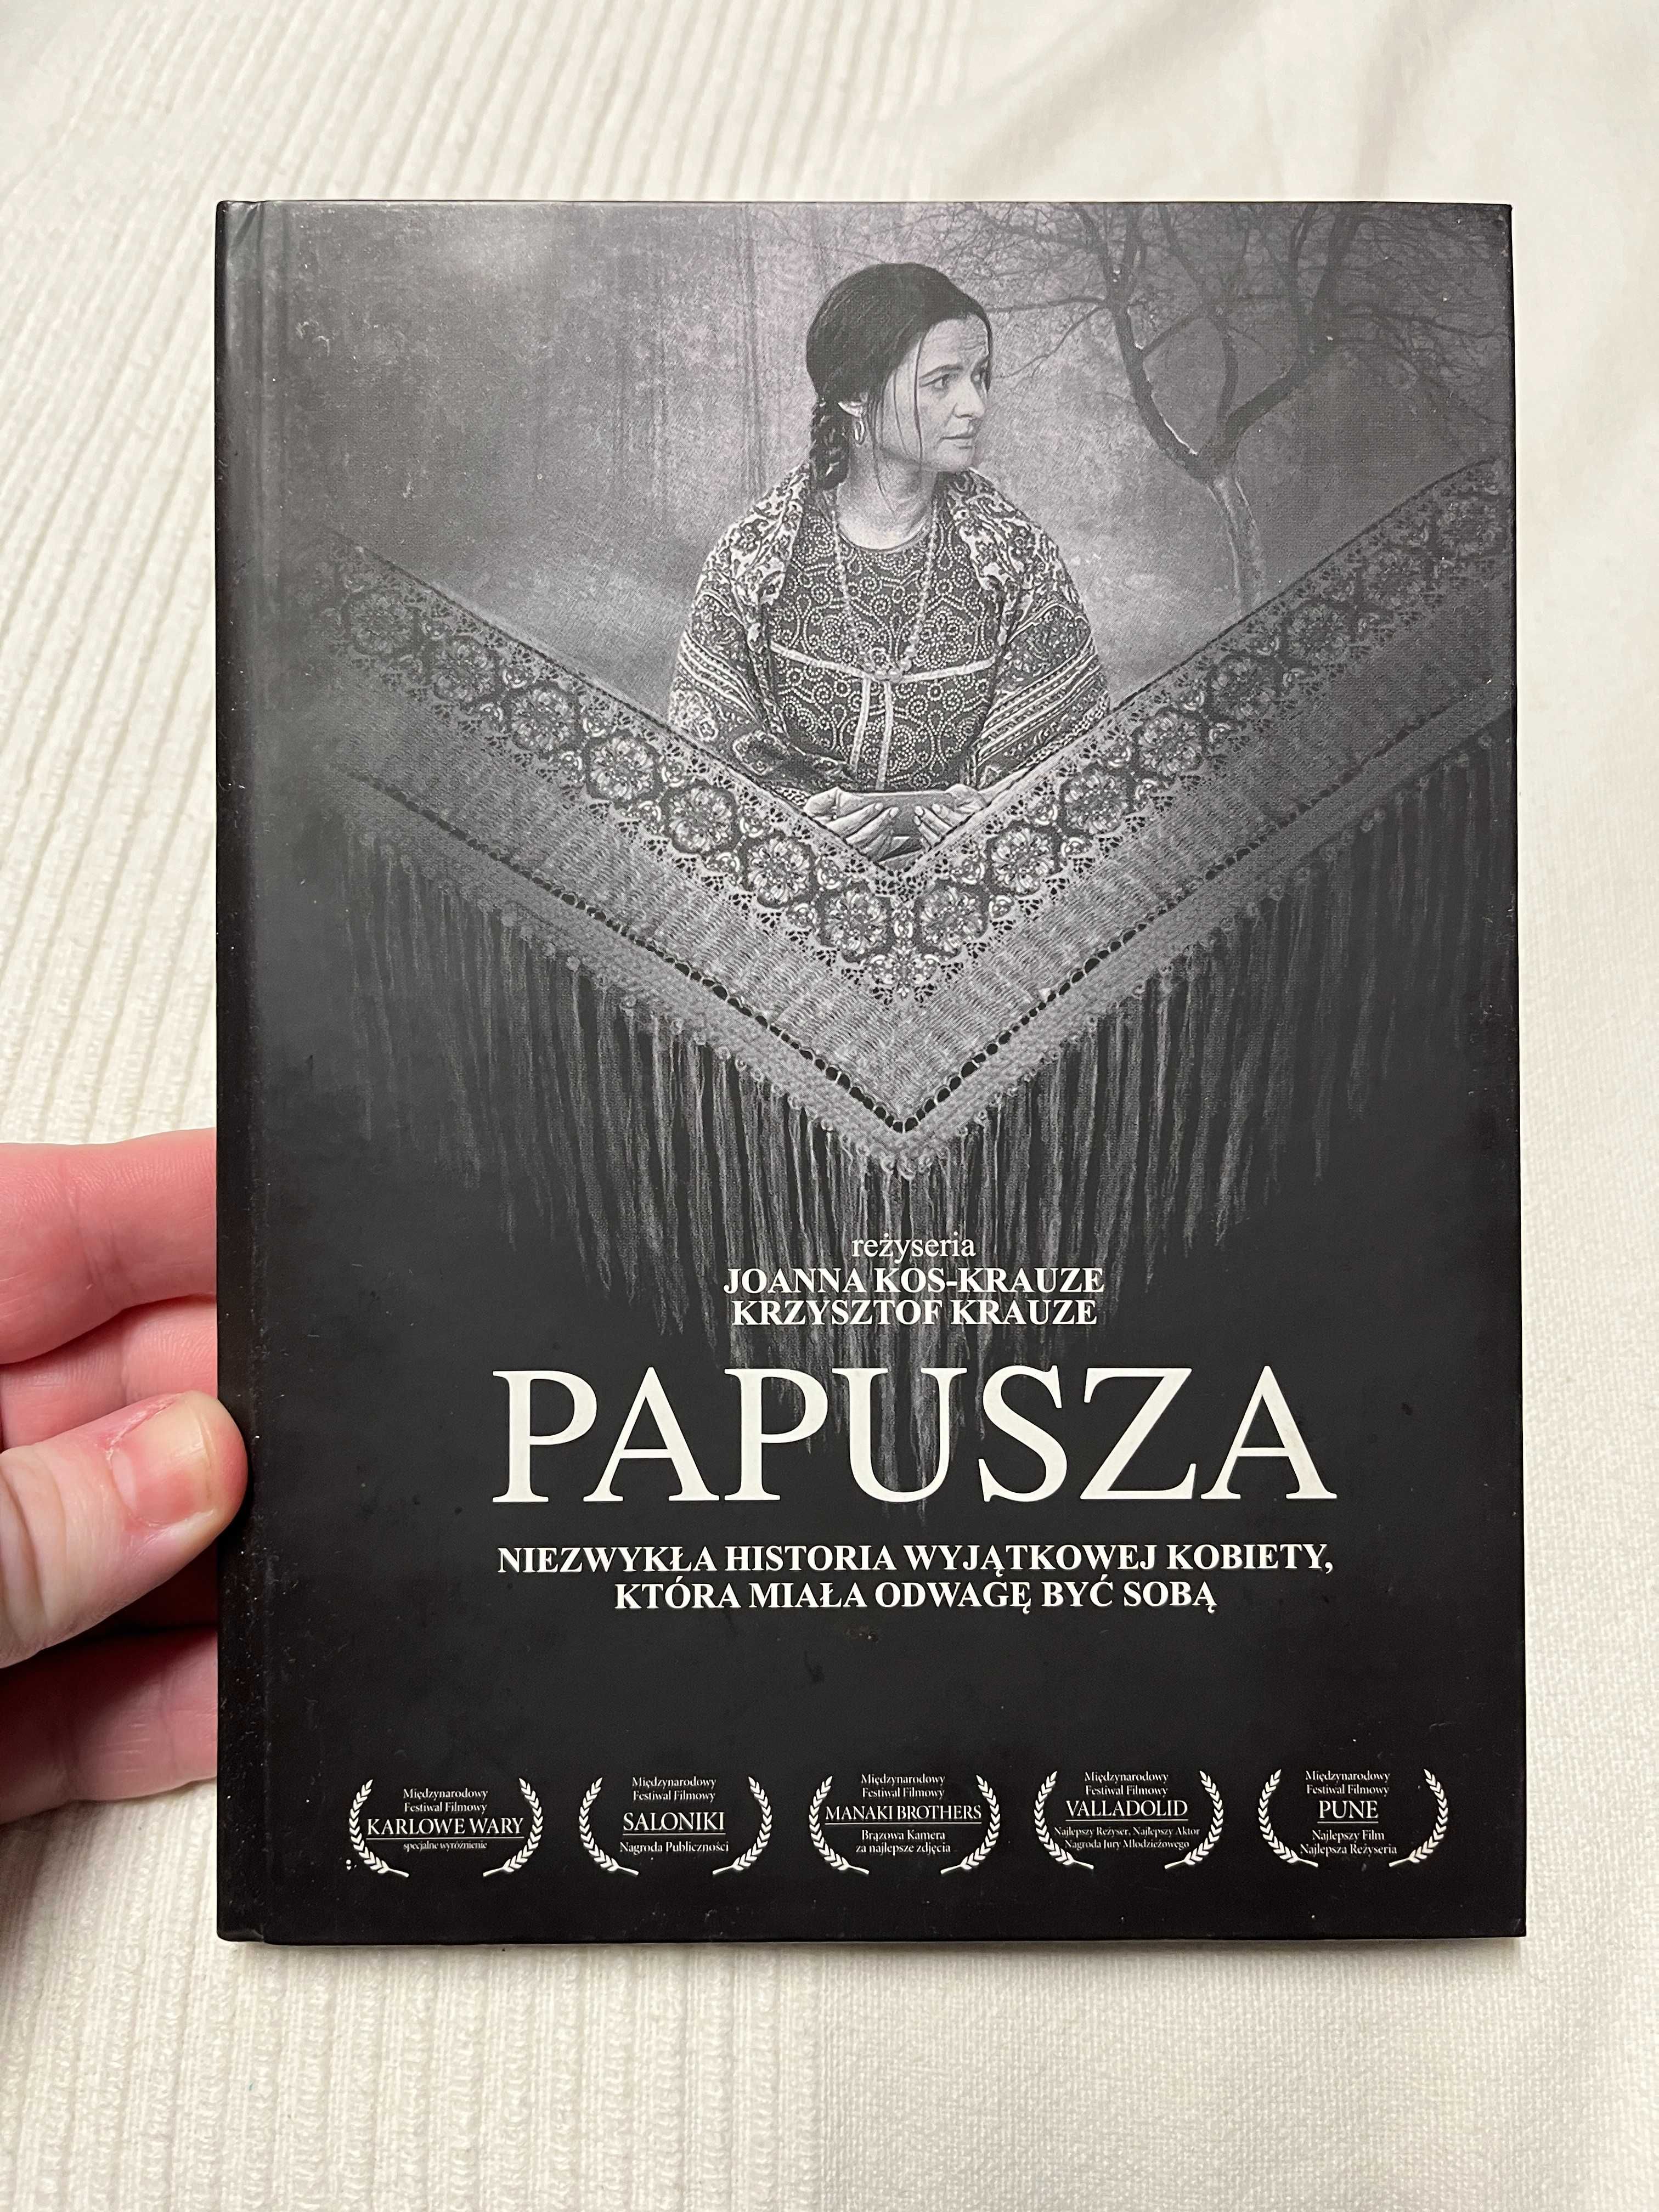 Papusza film polski 2013 płyta DVD biograficzny dramat kino cinema